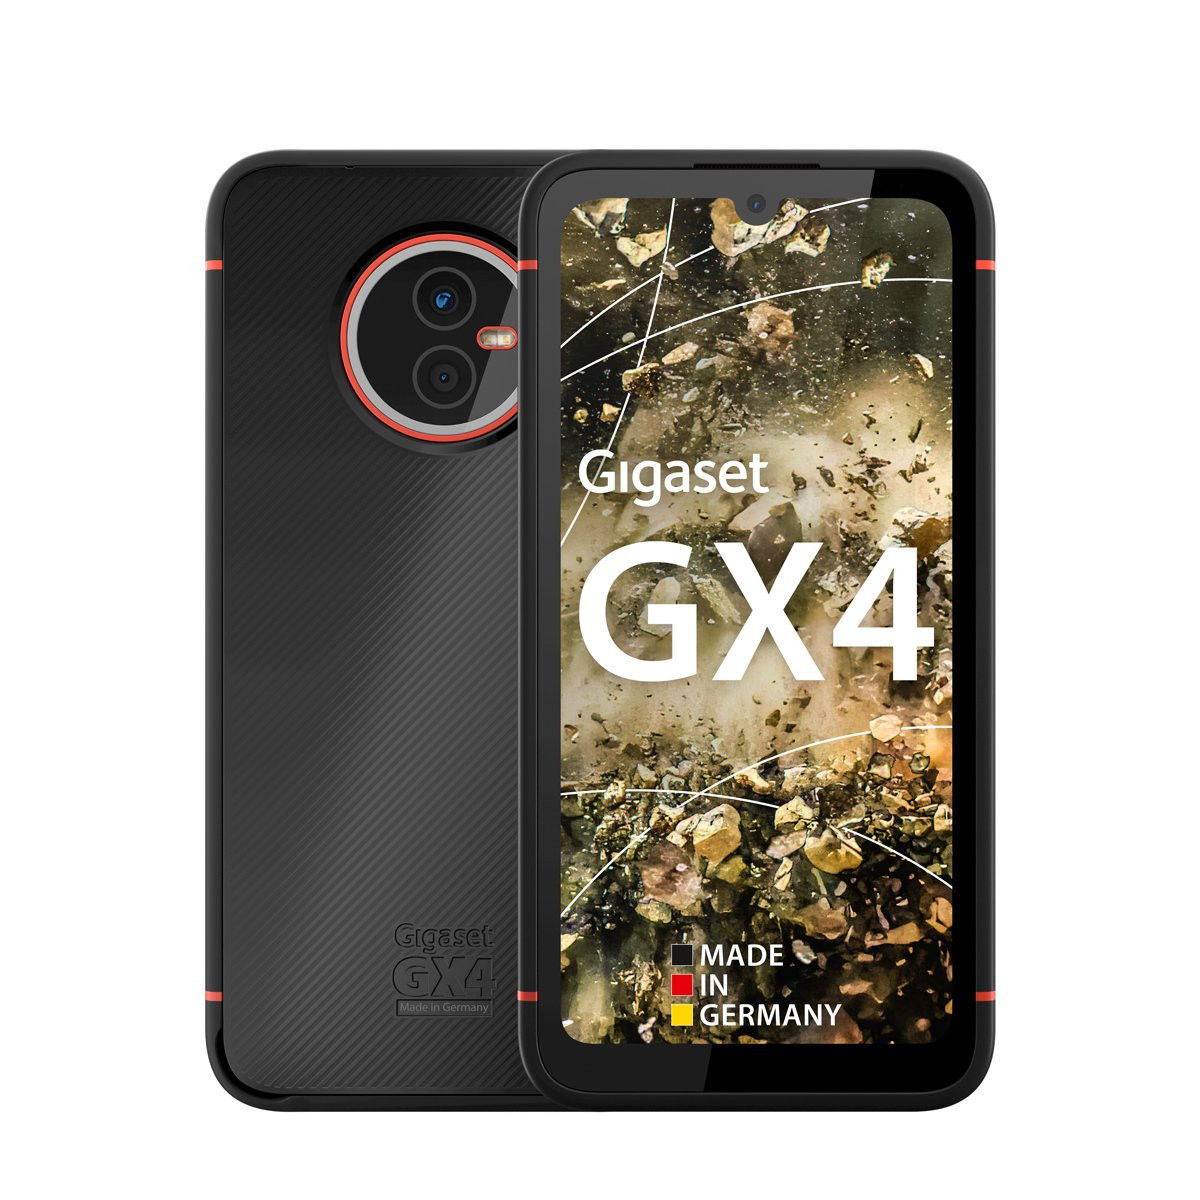 Gigaset GX4 4Gb 64Gb